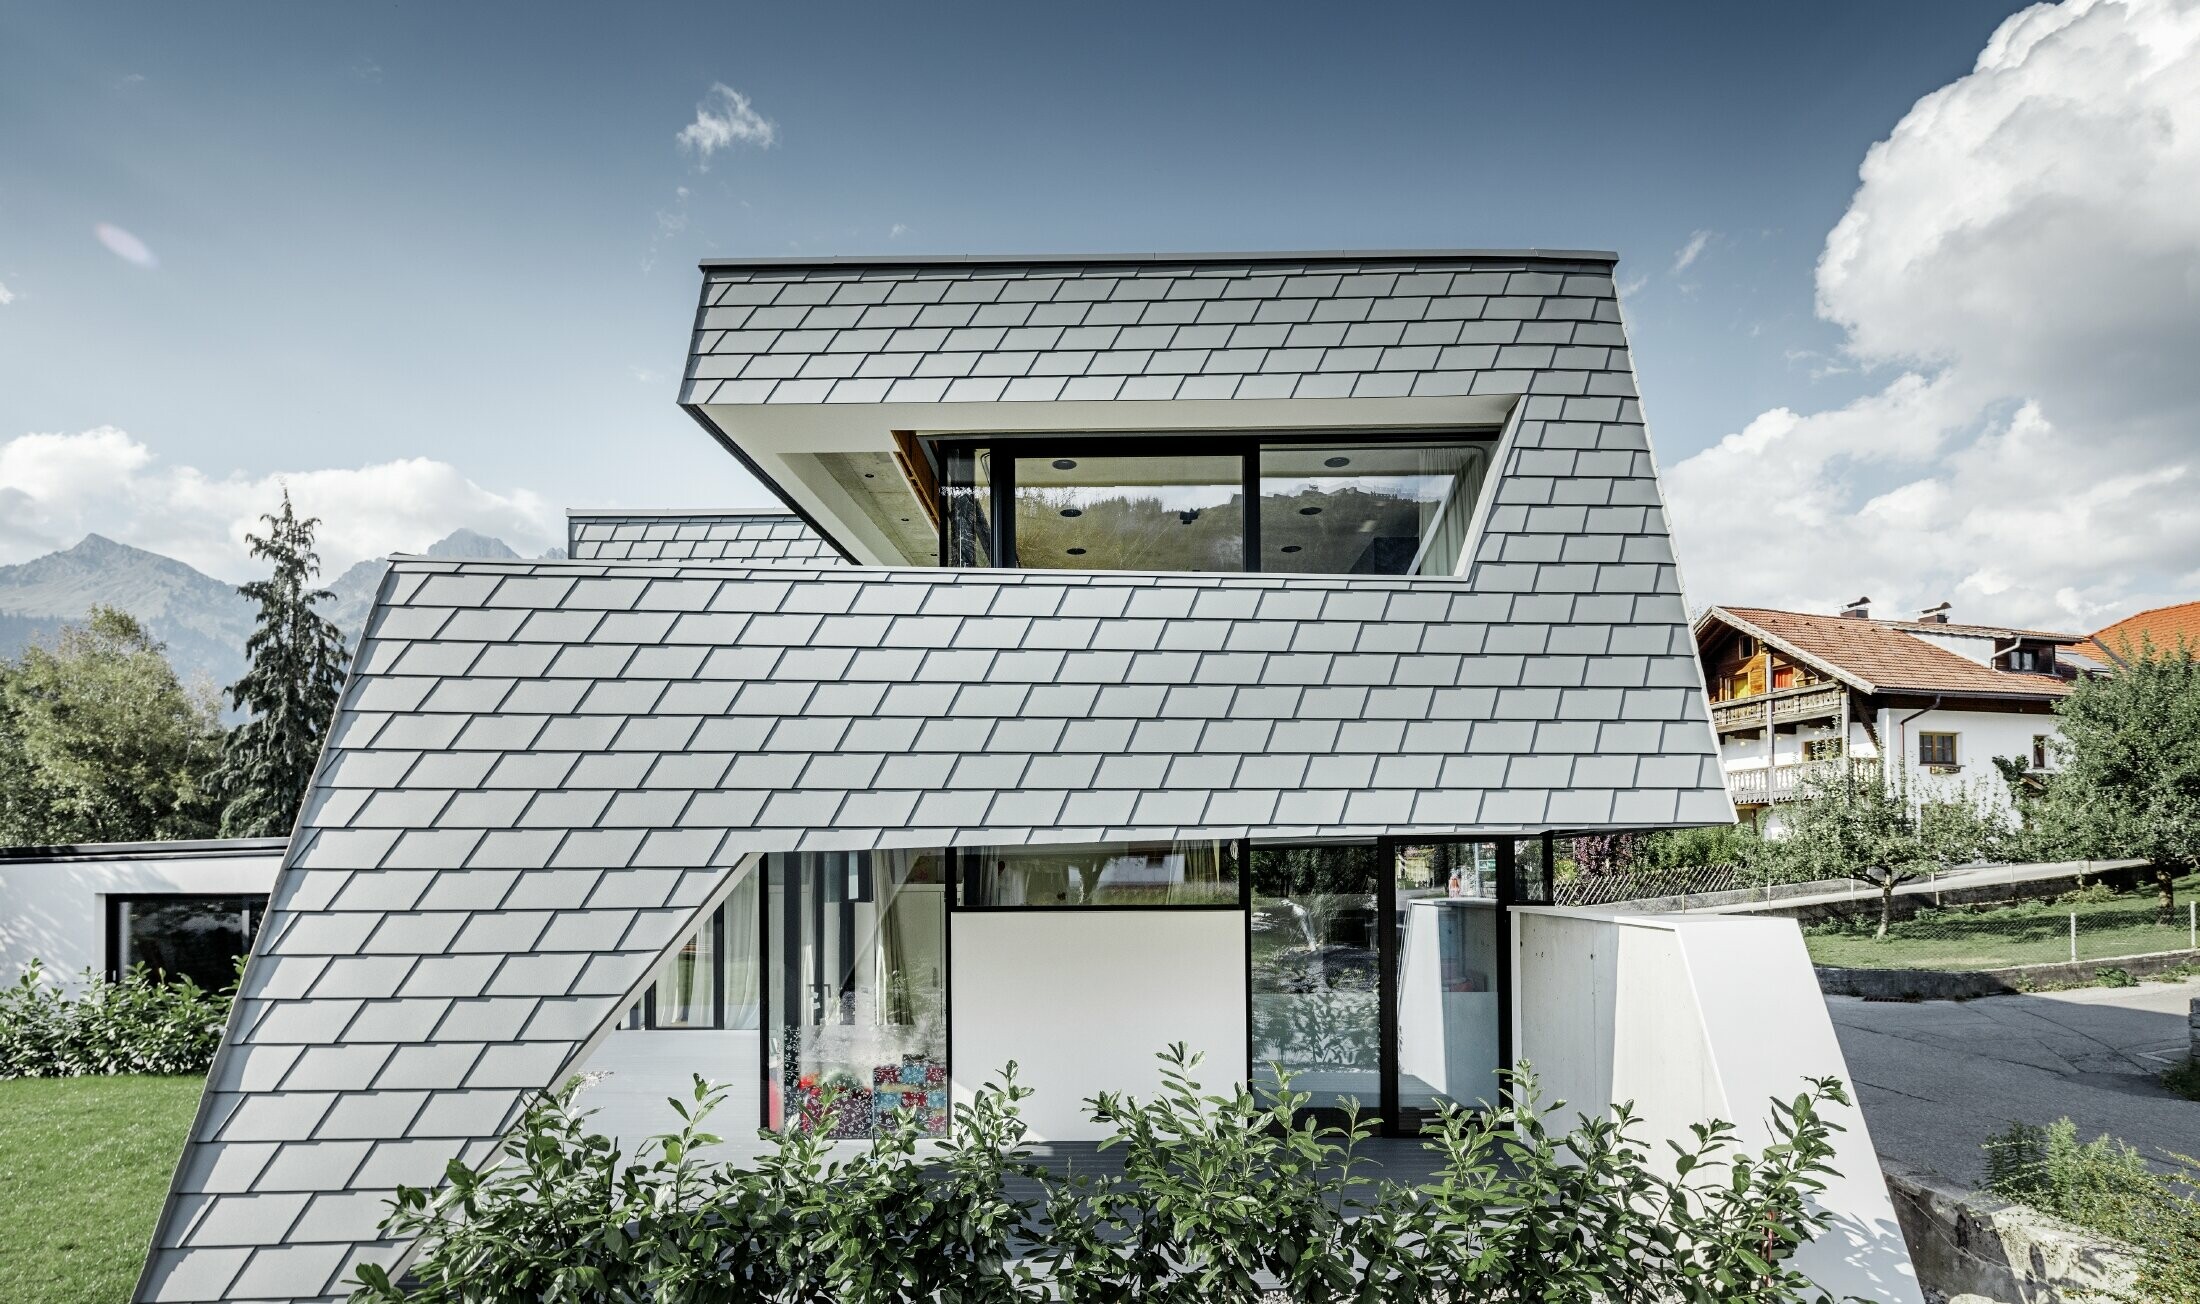 Moderne gezinswoning met plat dak, grote raamoppervlakken en aluminiumgevel met lichtgrijze schindels van PREFA